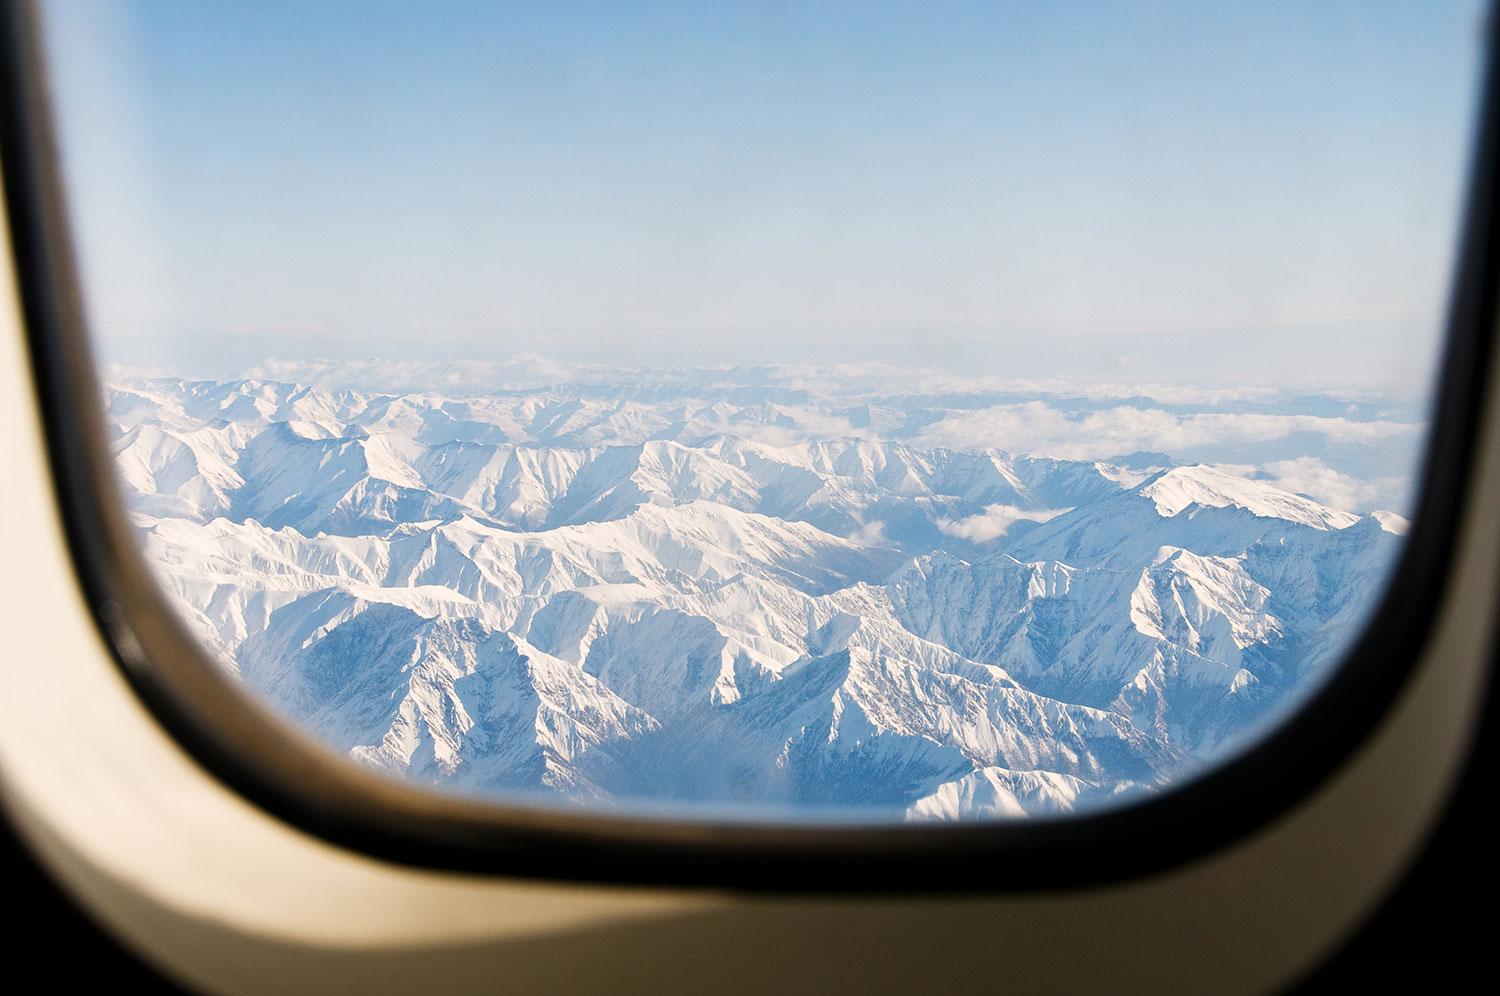 Dags för en tur till Alperna? Kolla om du får betala extra för skidutrustningen innan du bokar flyget.